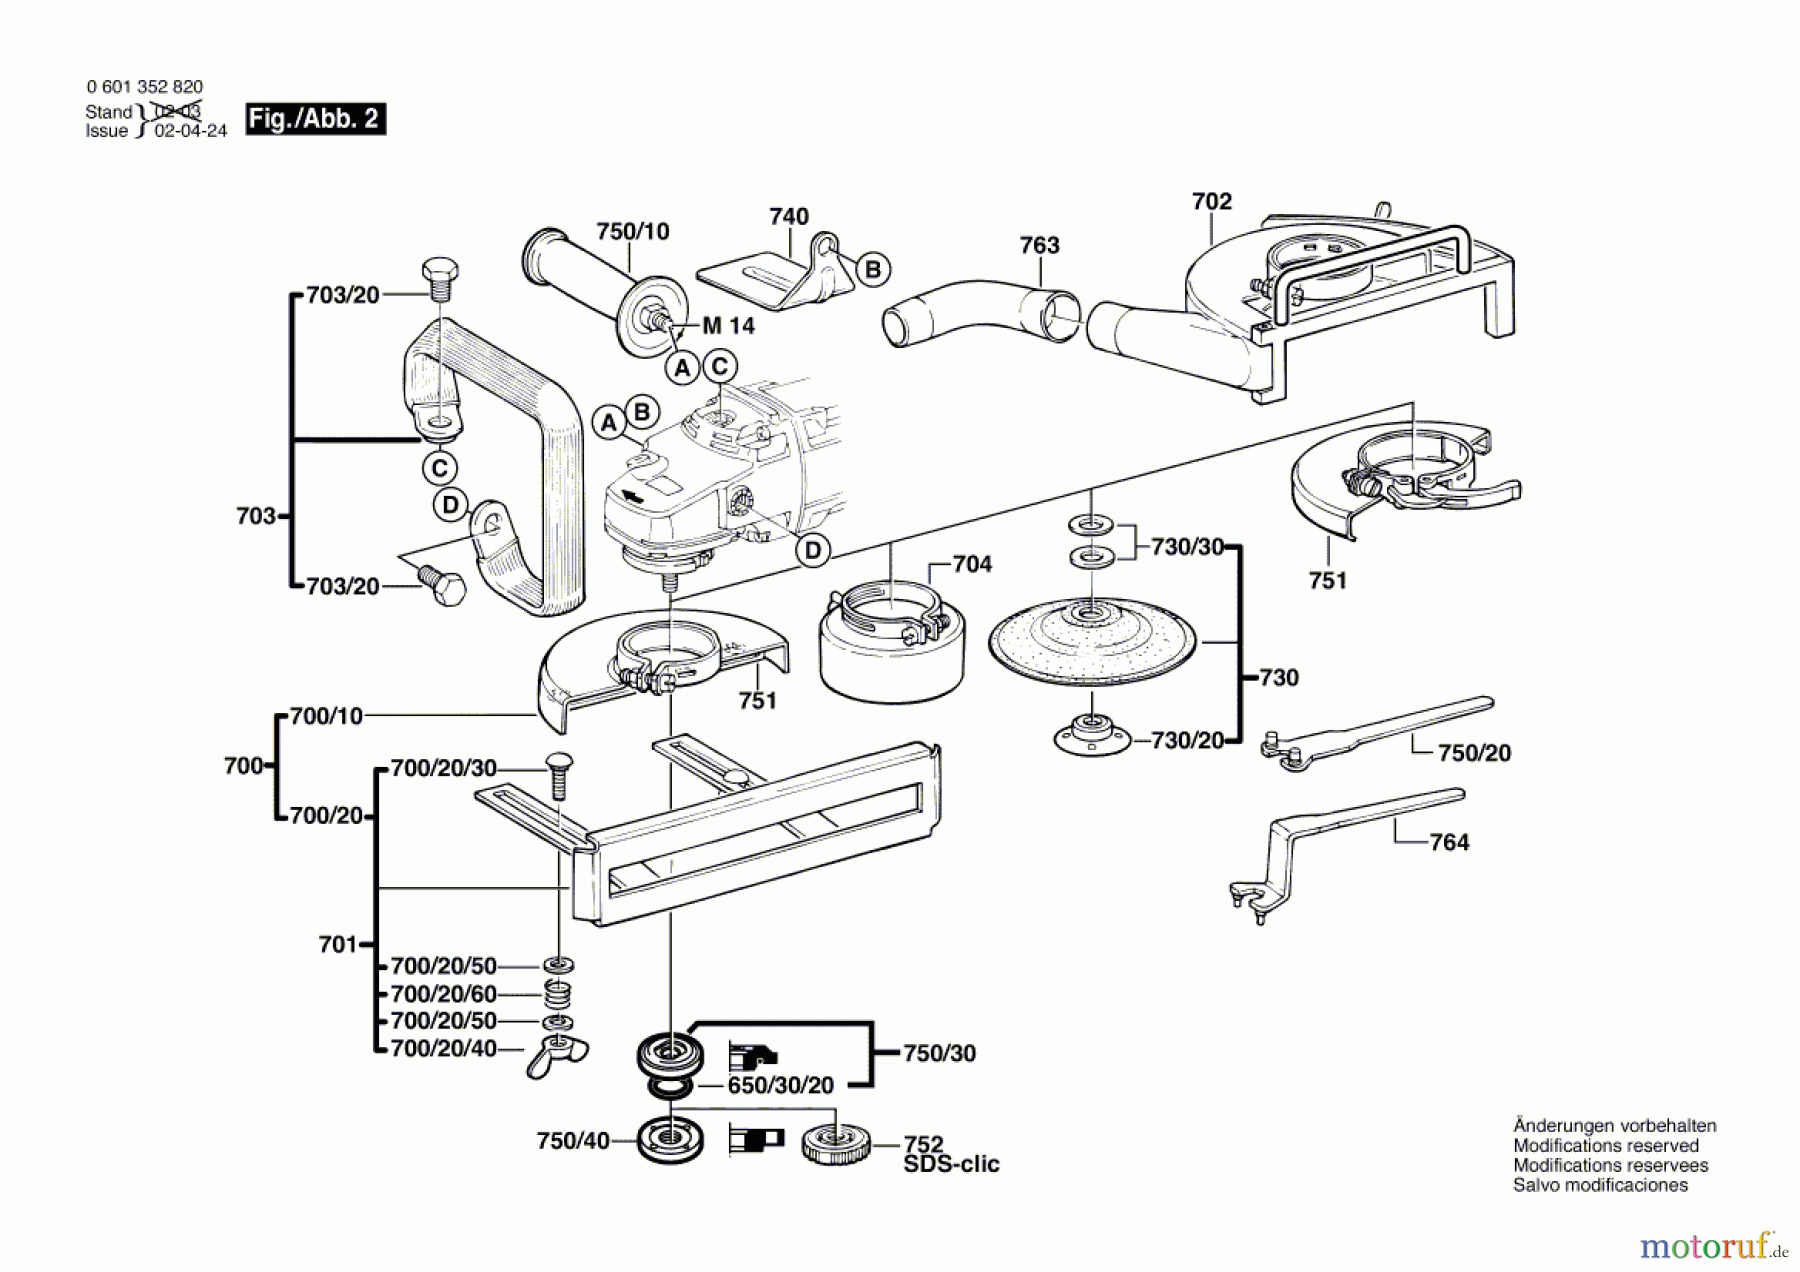  Bosch Werkzeug Winkelschleifer GWS 2000-230 J Seite 2